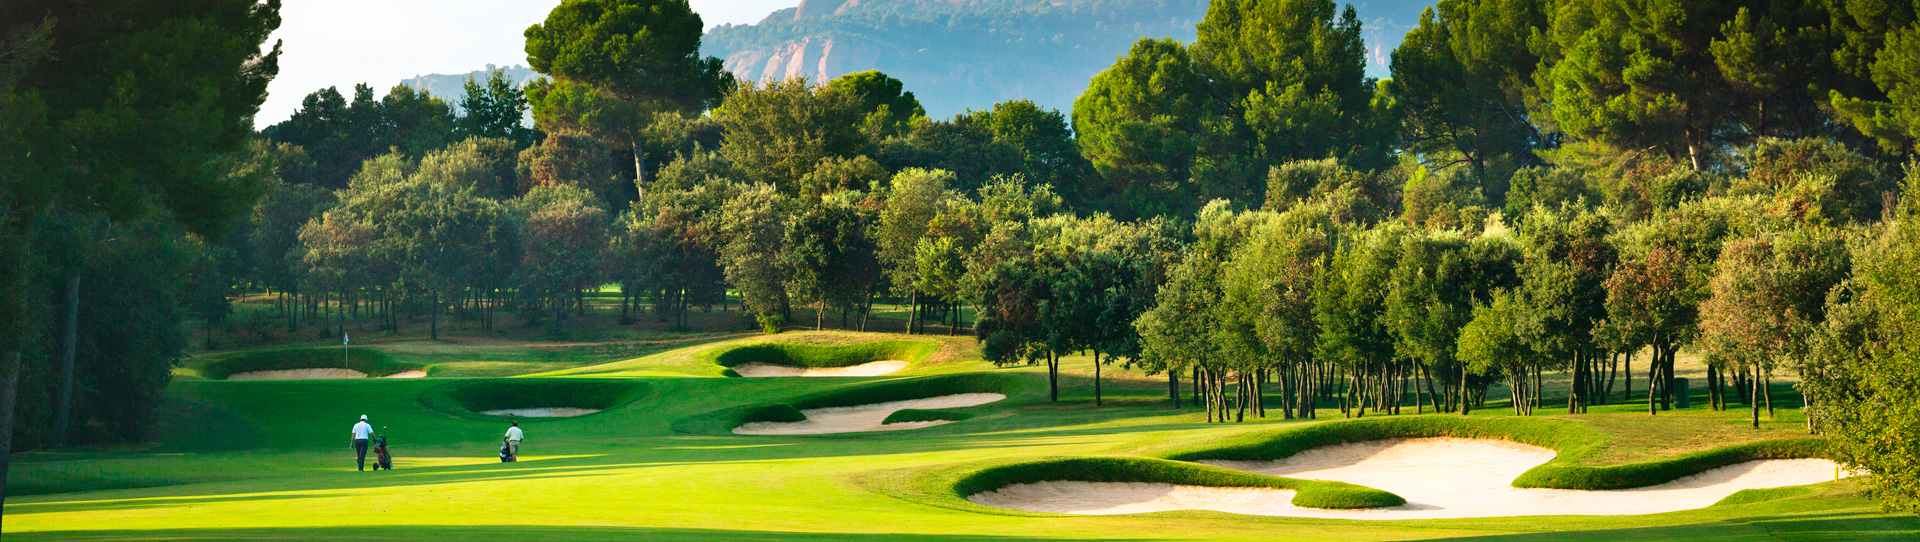 Spain golf courses - Real Club de Golf El Prat - Photo 1